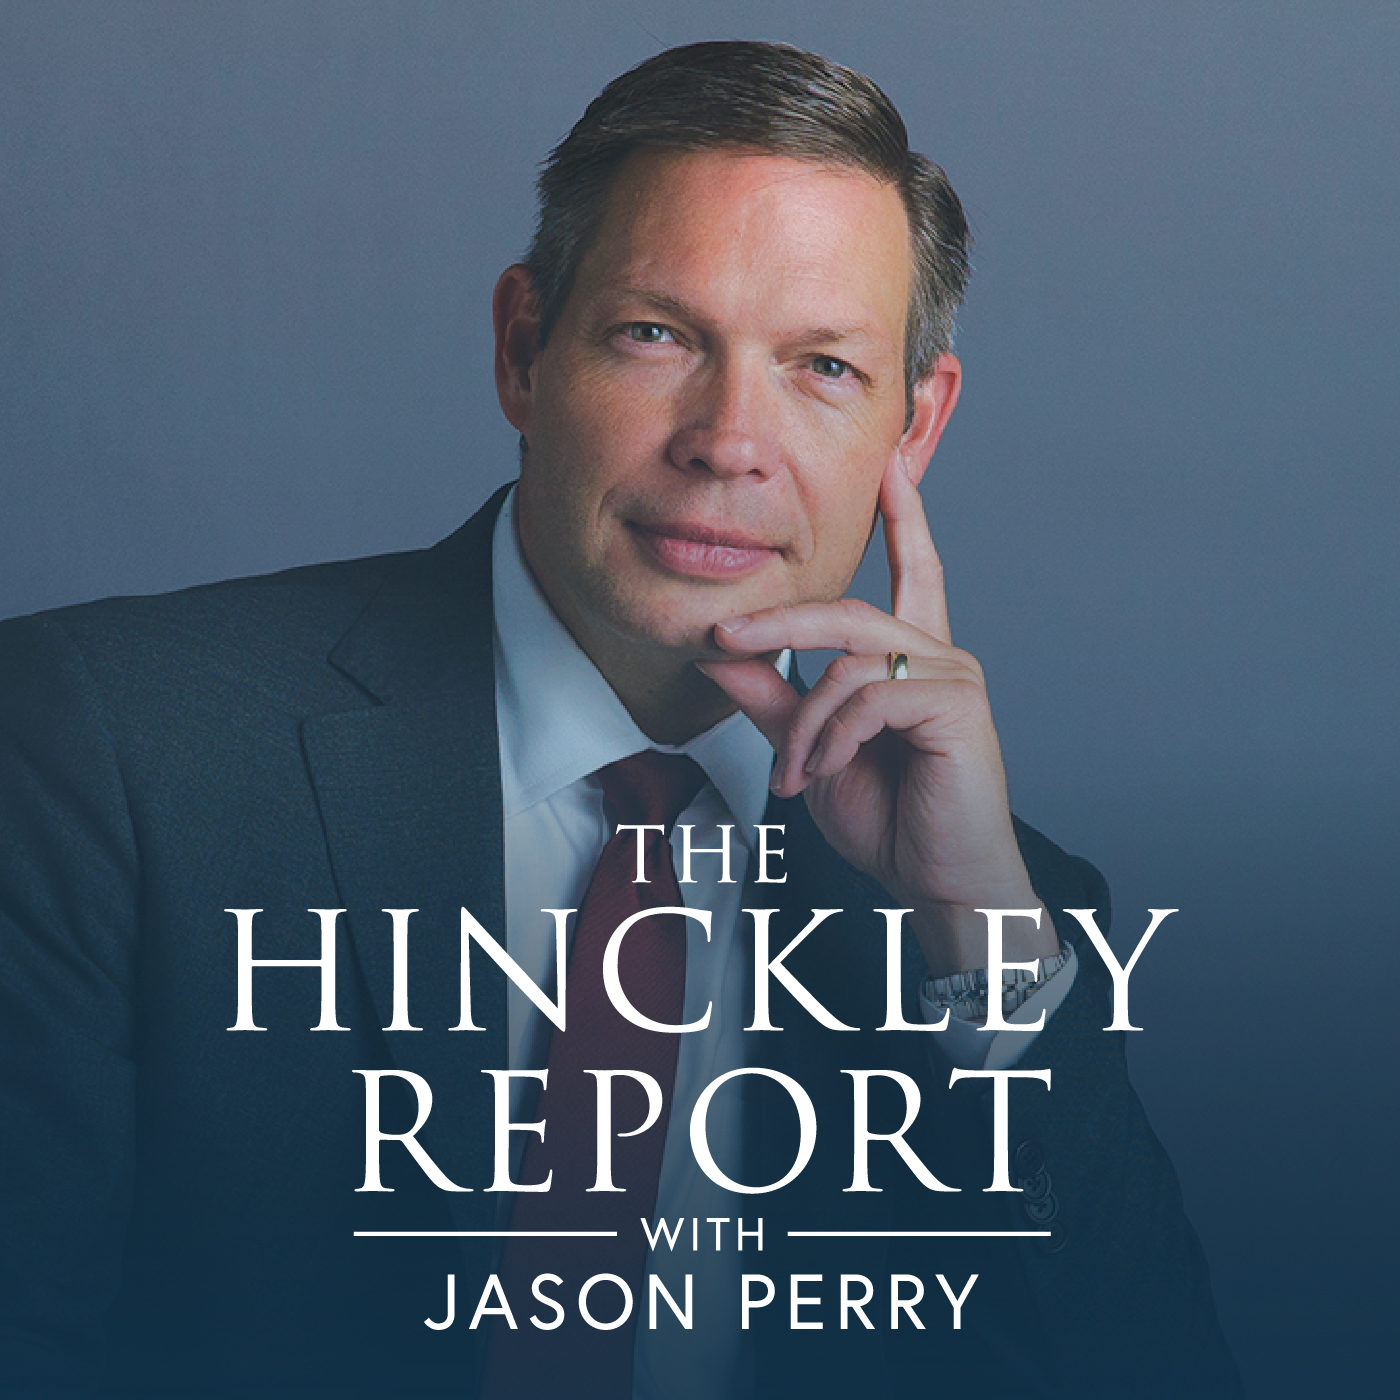 The Hinckley Report